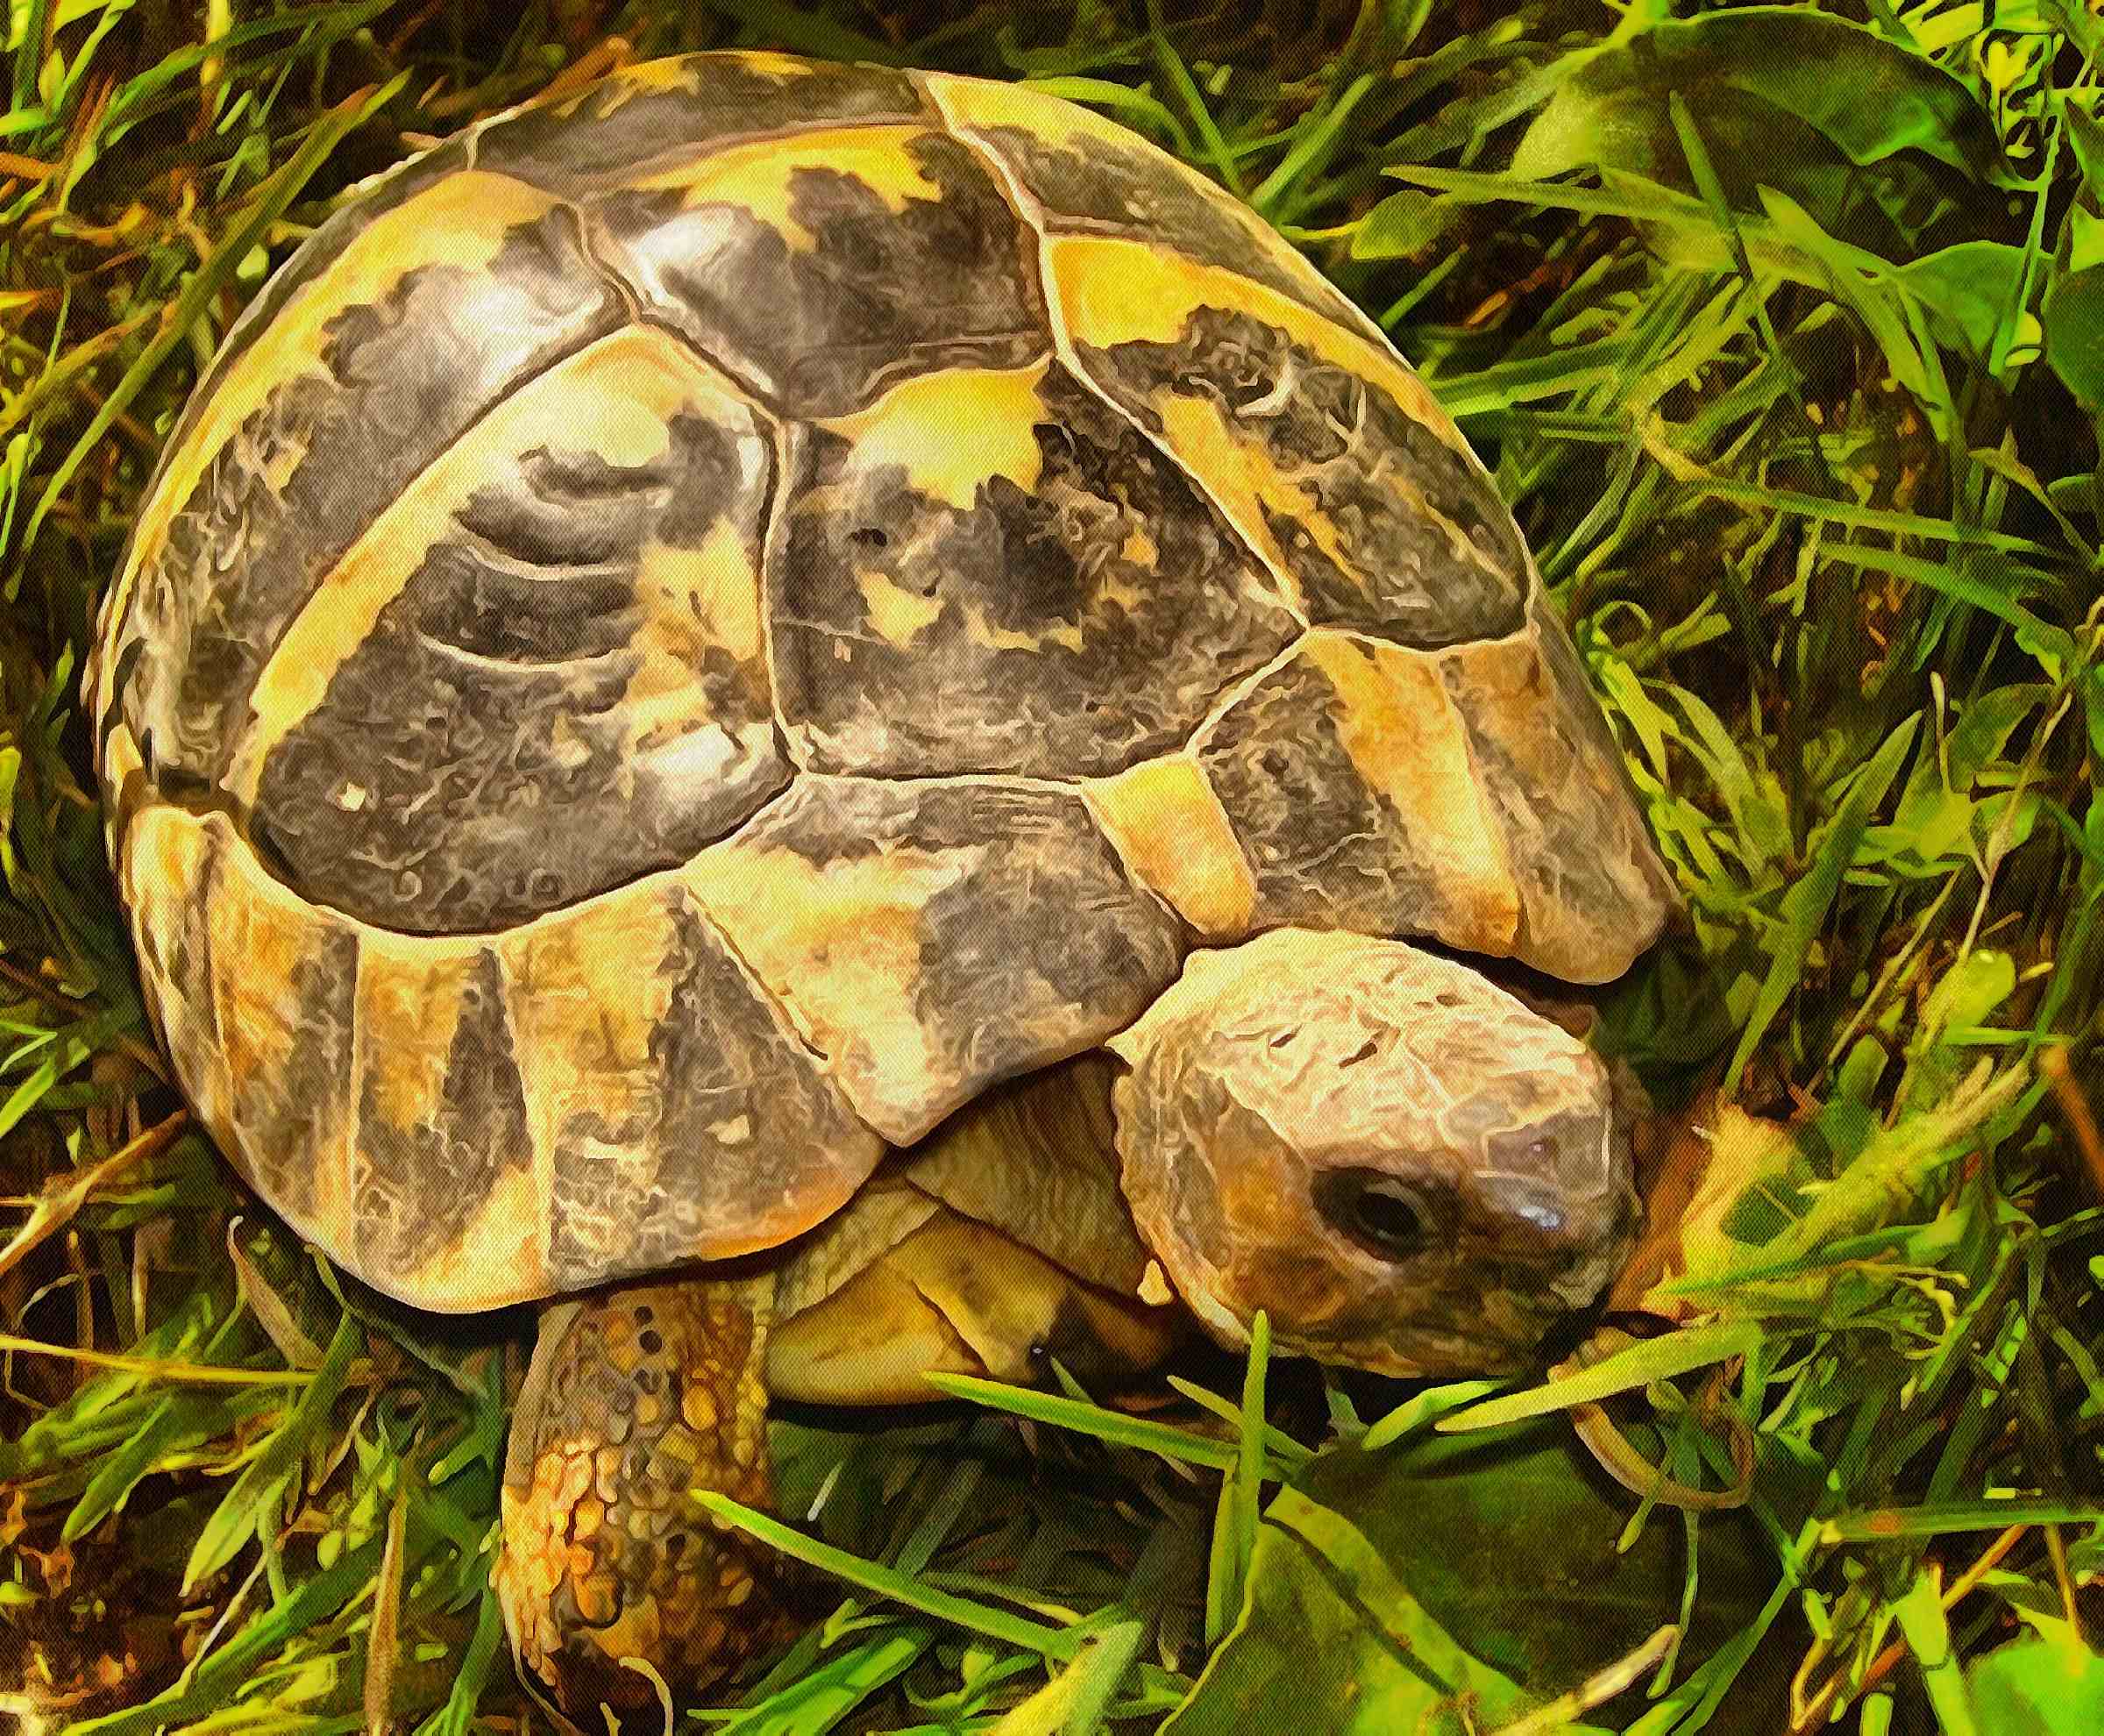 Leatherback, turtle, Turtle, Tortoise, Turtle free images,  – Turtle free images, Tortoise free , Turtle stock free images, Download free images turtles, tortoise free images, tortoise public domain images!